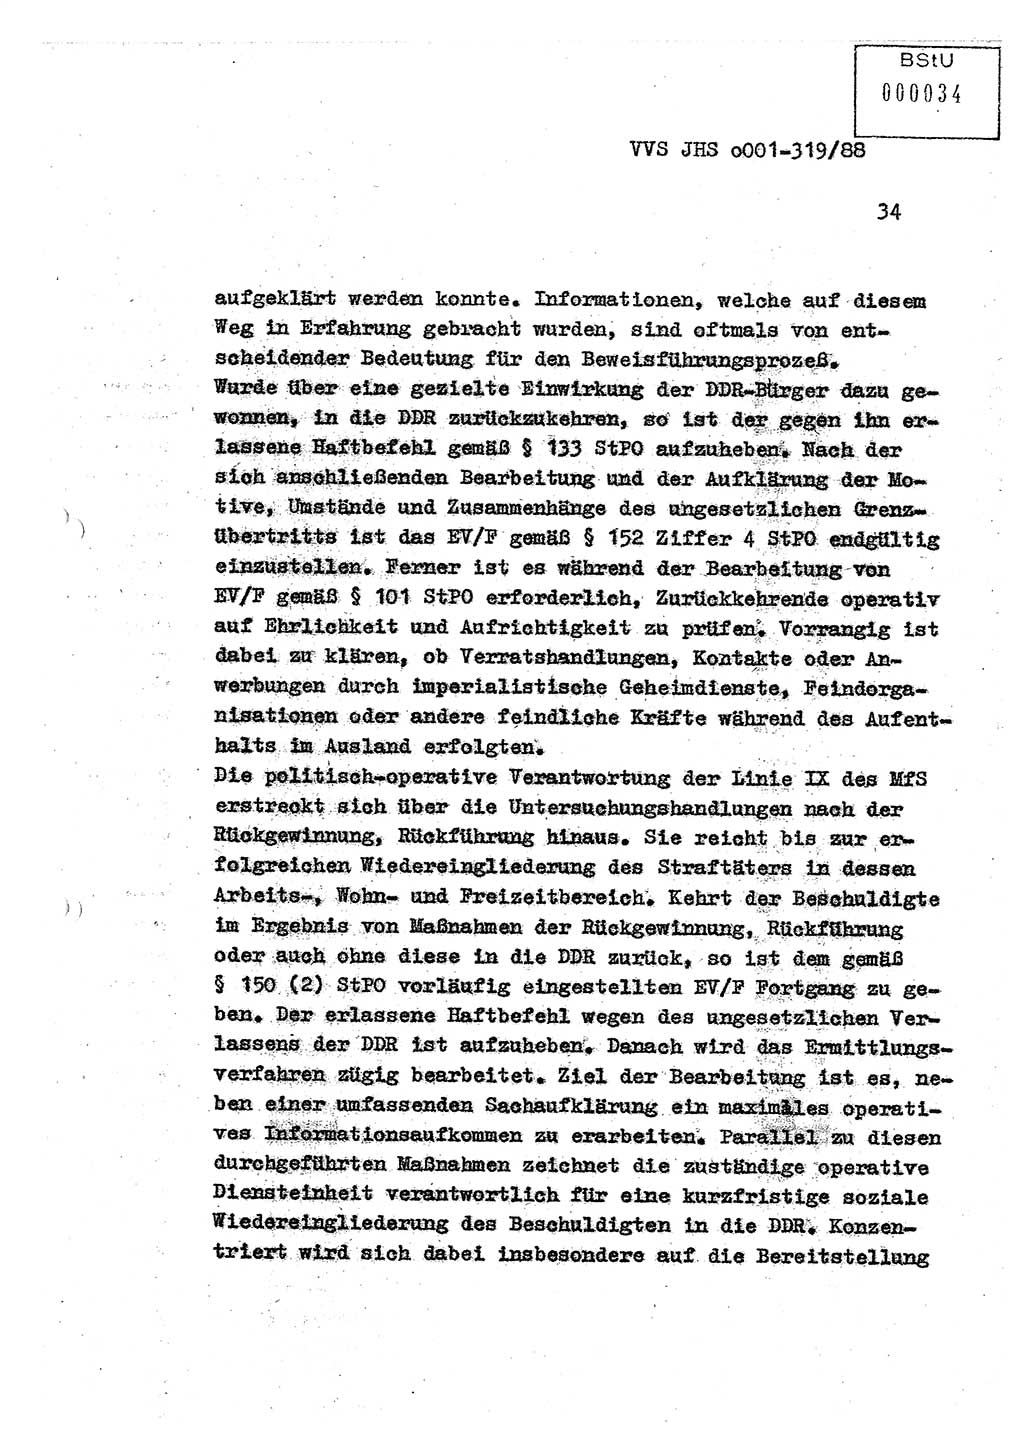 Diplomarbeit Offiziersschüler Holger Zirnstein (HA Ⅸ/9), Ministerium für Staatssicherheit (MfS) [Deutsche Demokratische Republik (DDR)], Juristische Hochschule (JHS), Vertrauliche Verschlußsache (VVS) o001-319/88, Potsdam 1988, Blatt 34 (Dipl.-Arb. MfS DDR JHS VVS o001-319/88 1988, Bl. 34)